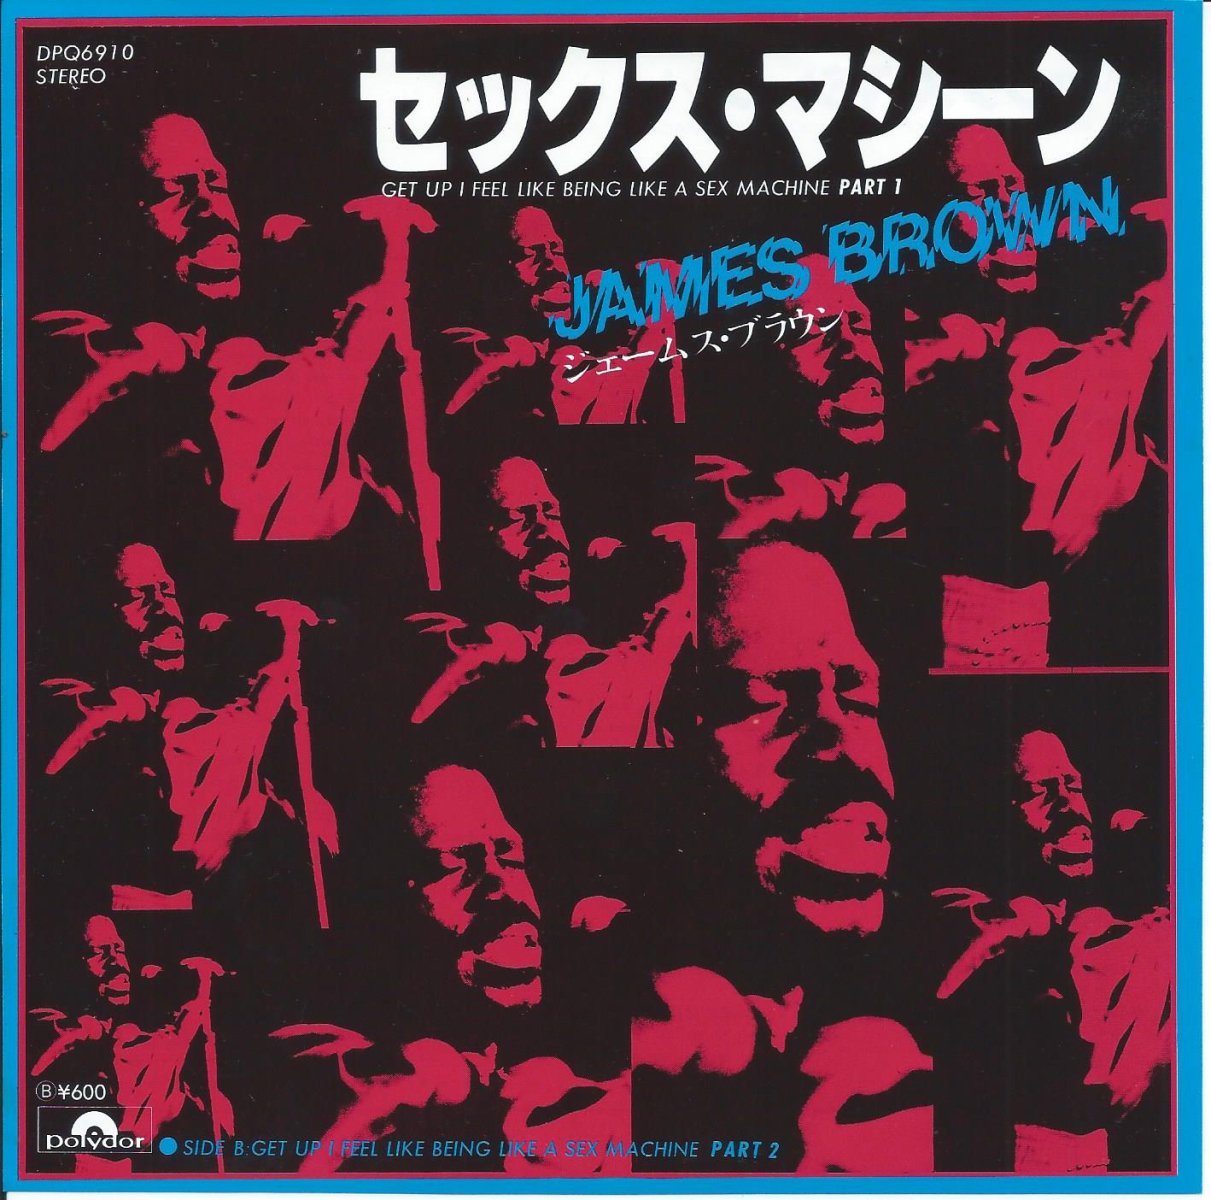 ジェームス・ブラウン JAMES BROWN / セックス・マシーン (パート1&2 